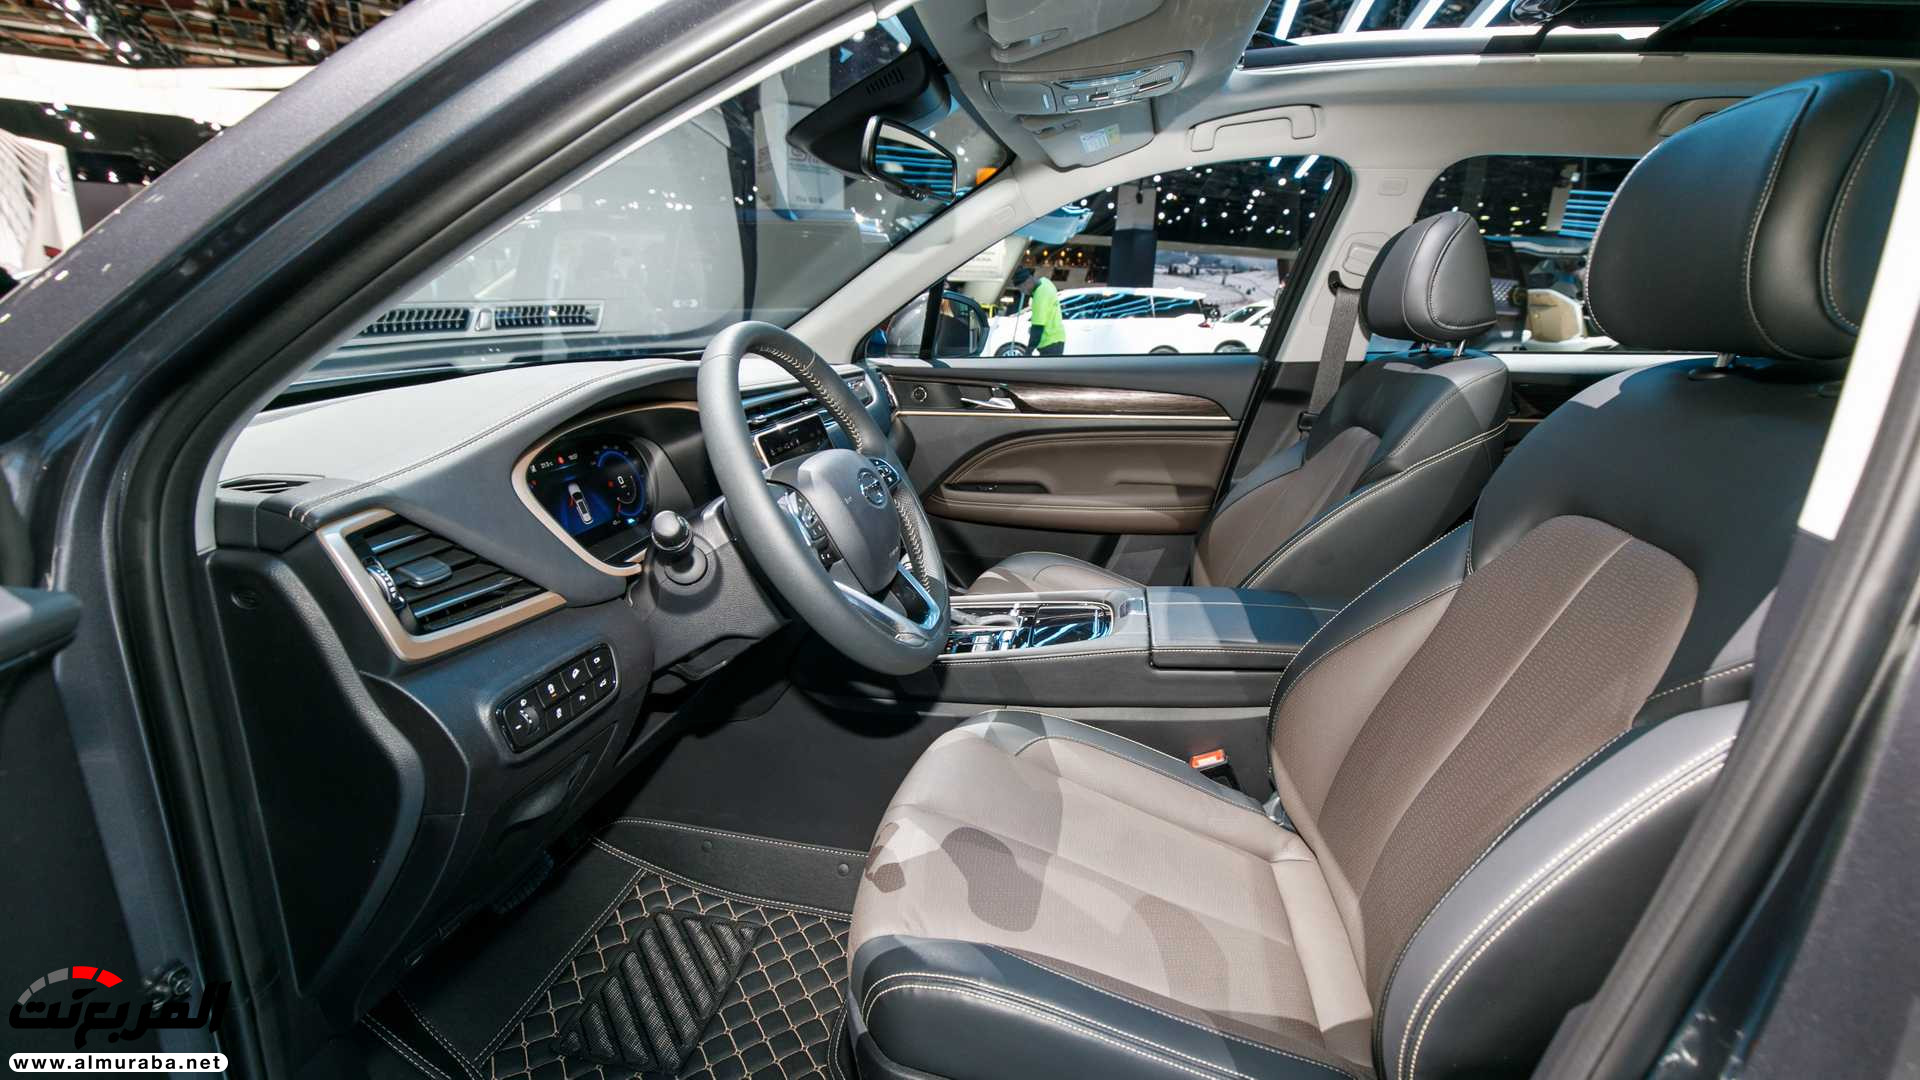 "80 صورة" نظرة على سيارات جي ايه سي في معرض ديترويت للسيارات 2019 239